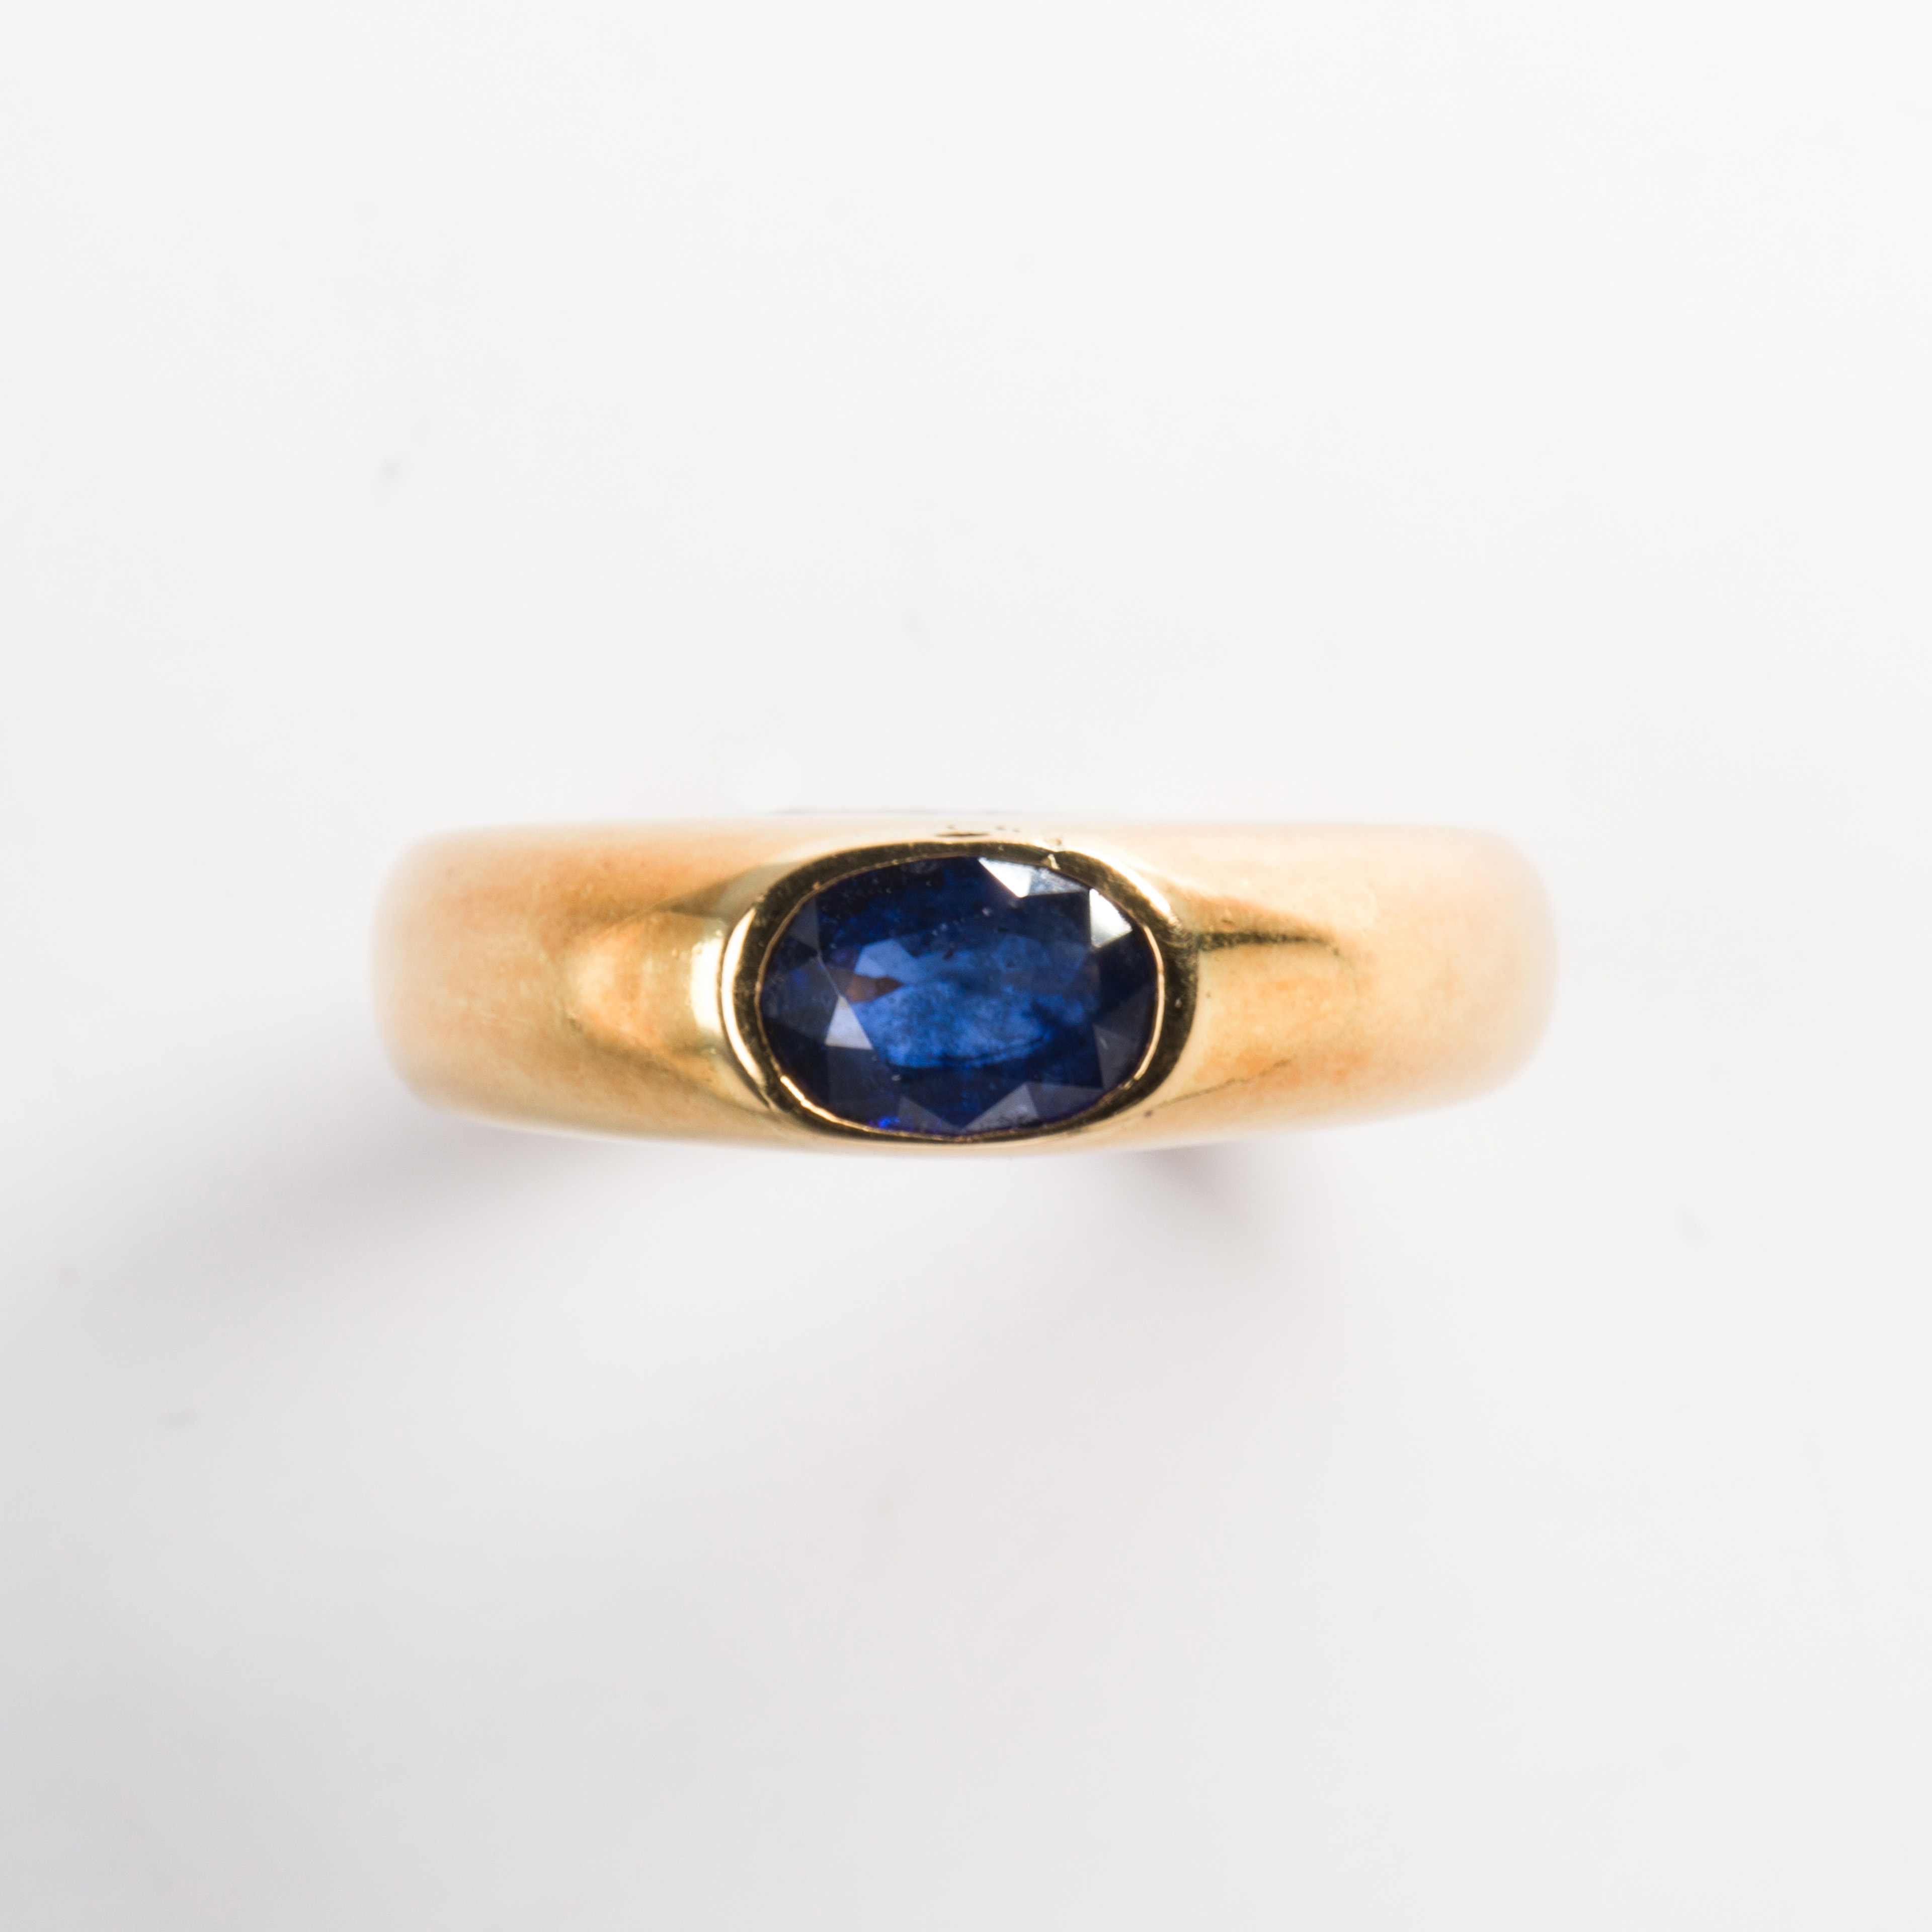 A sapphire and eighteen karat gold ring